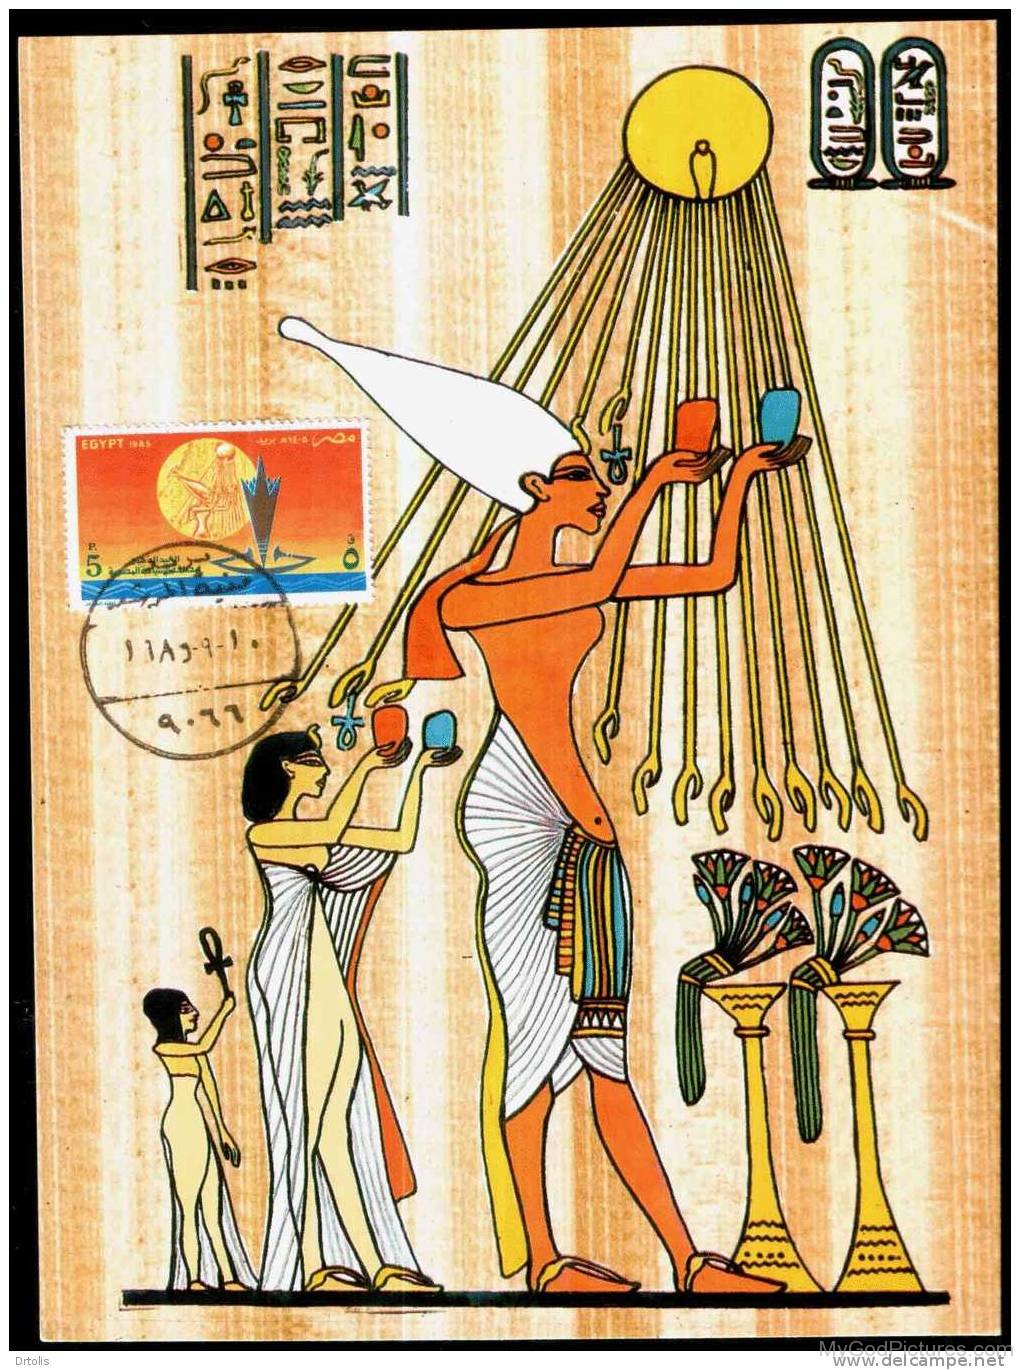 Egyptians-Gods-Workship-God-Aten-hj53.jp